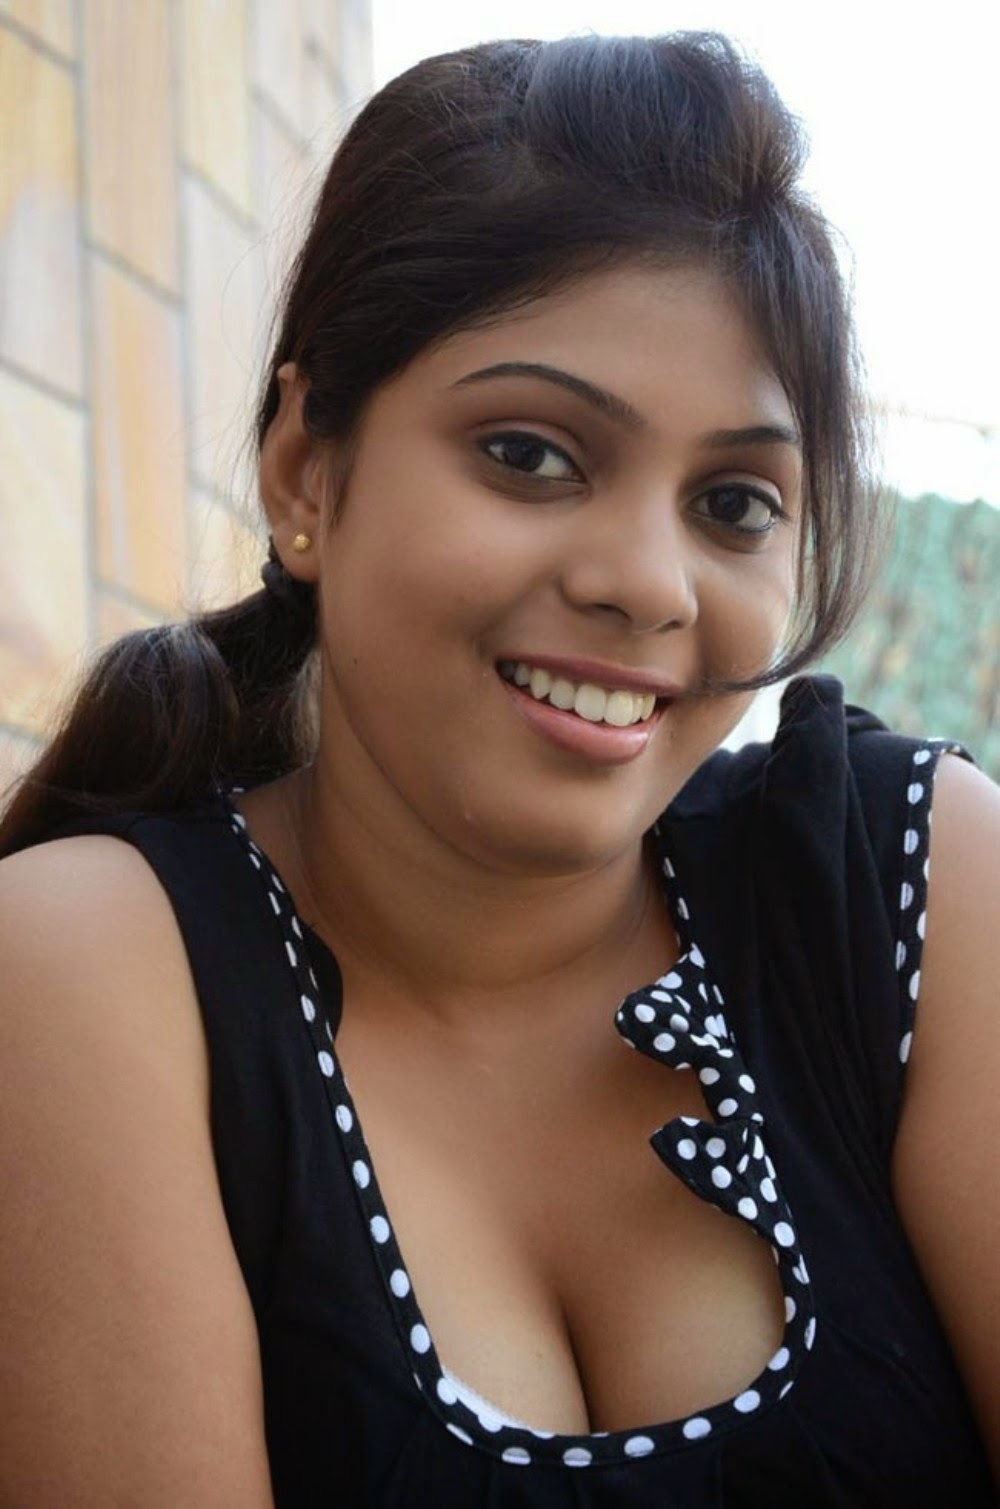 South Indian Actress Hot Photos Bollywood Hot Mo